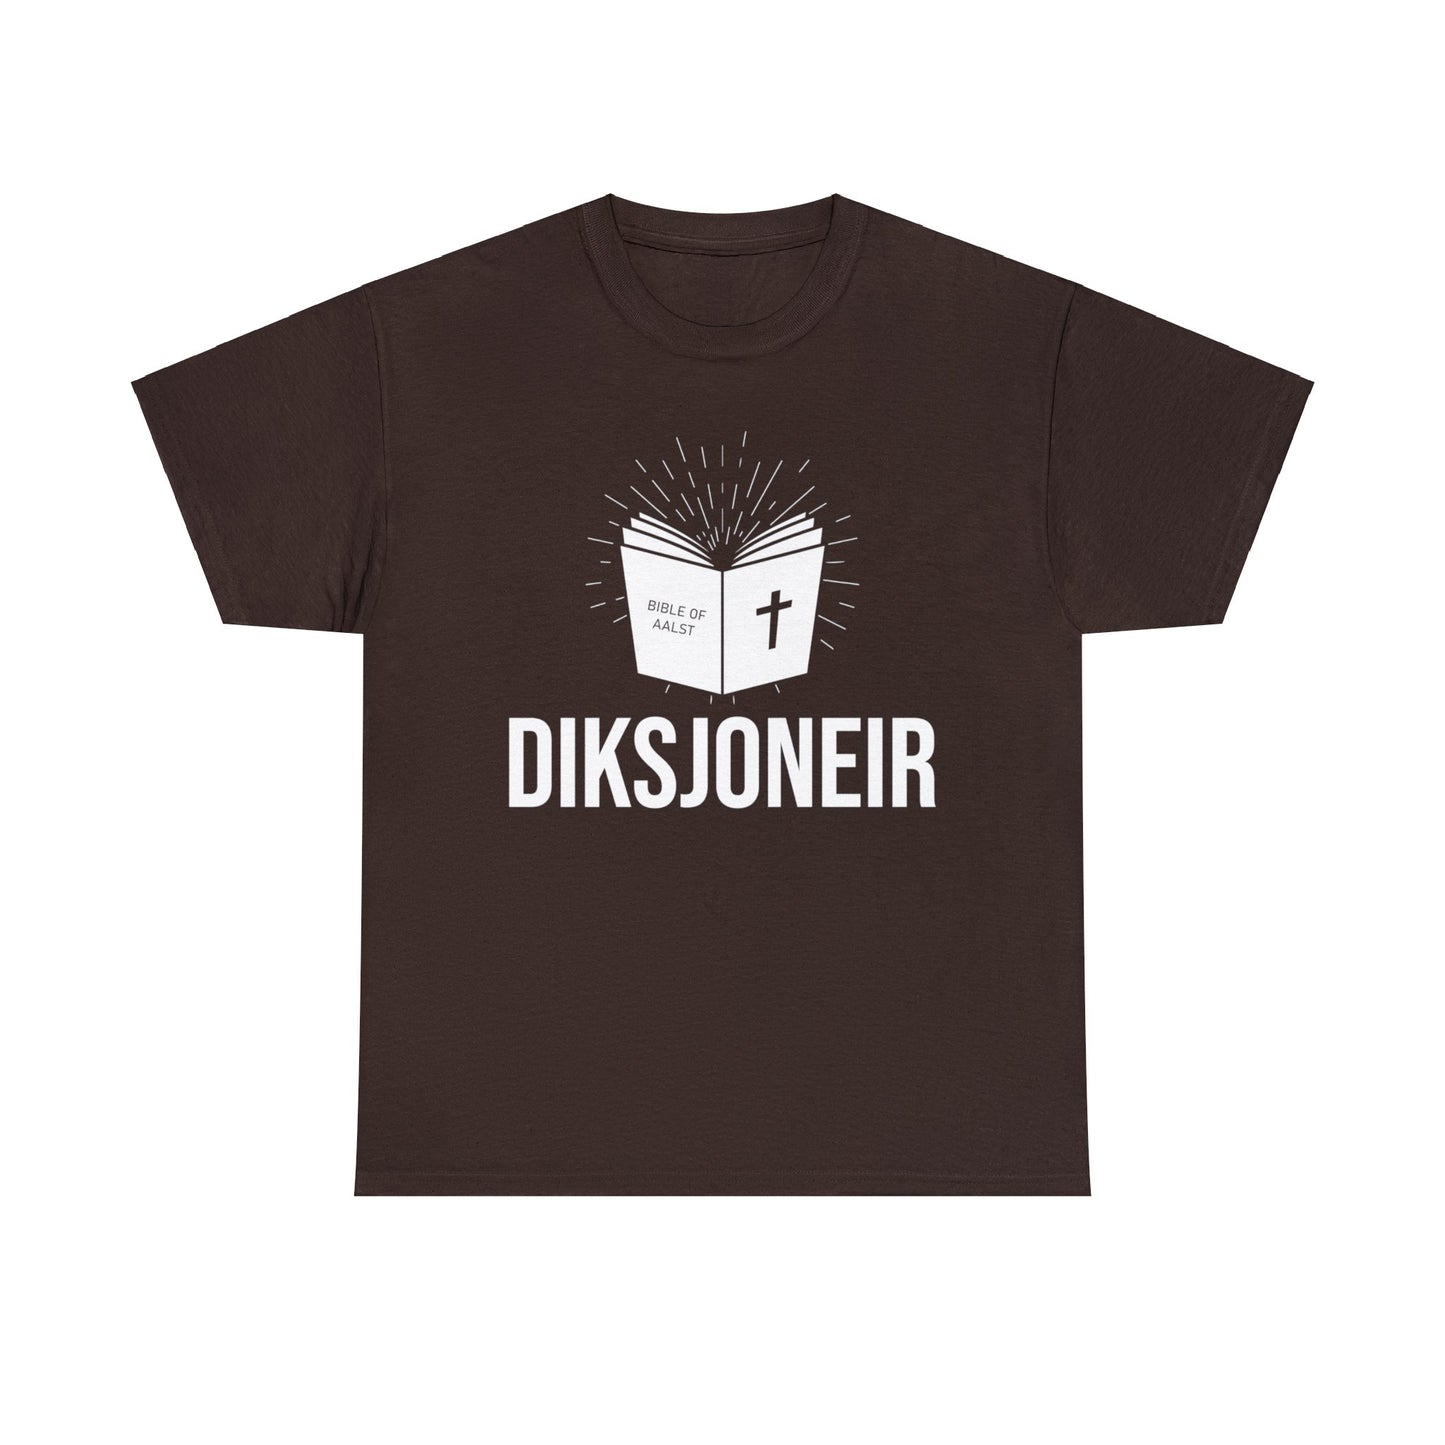 Int Oilsjters - Tshirt - Diksjoneir